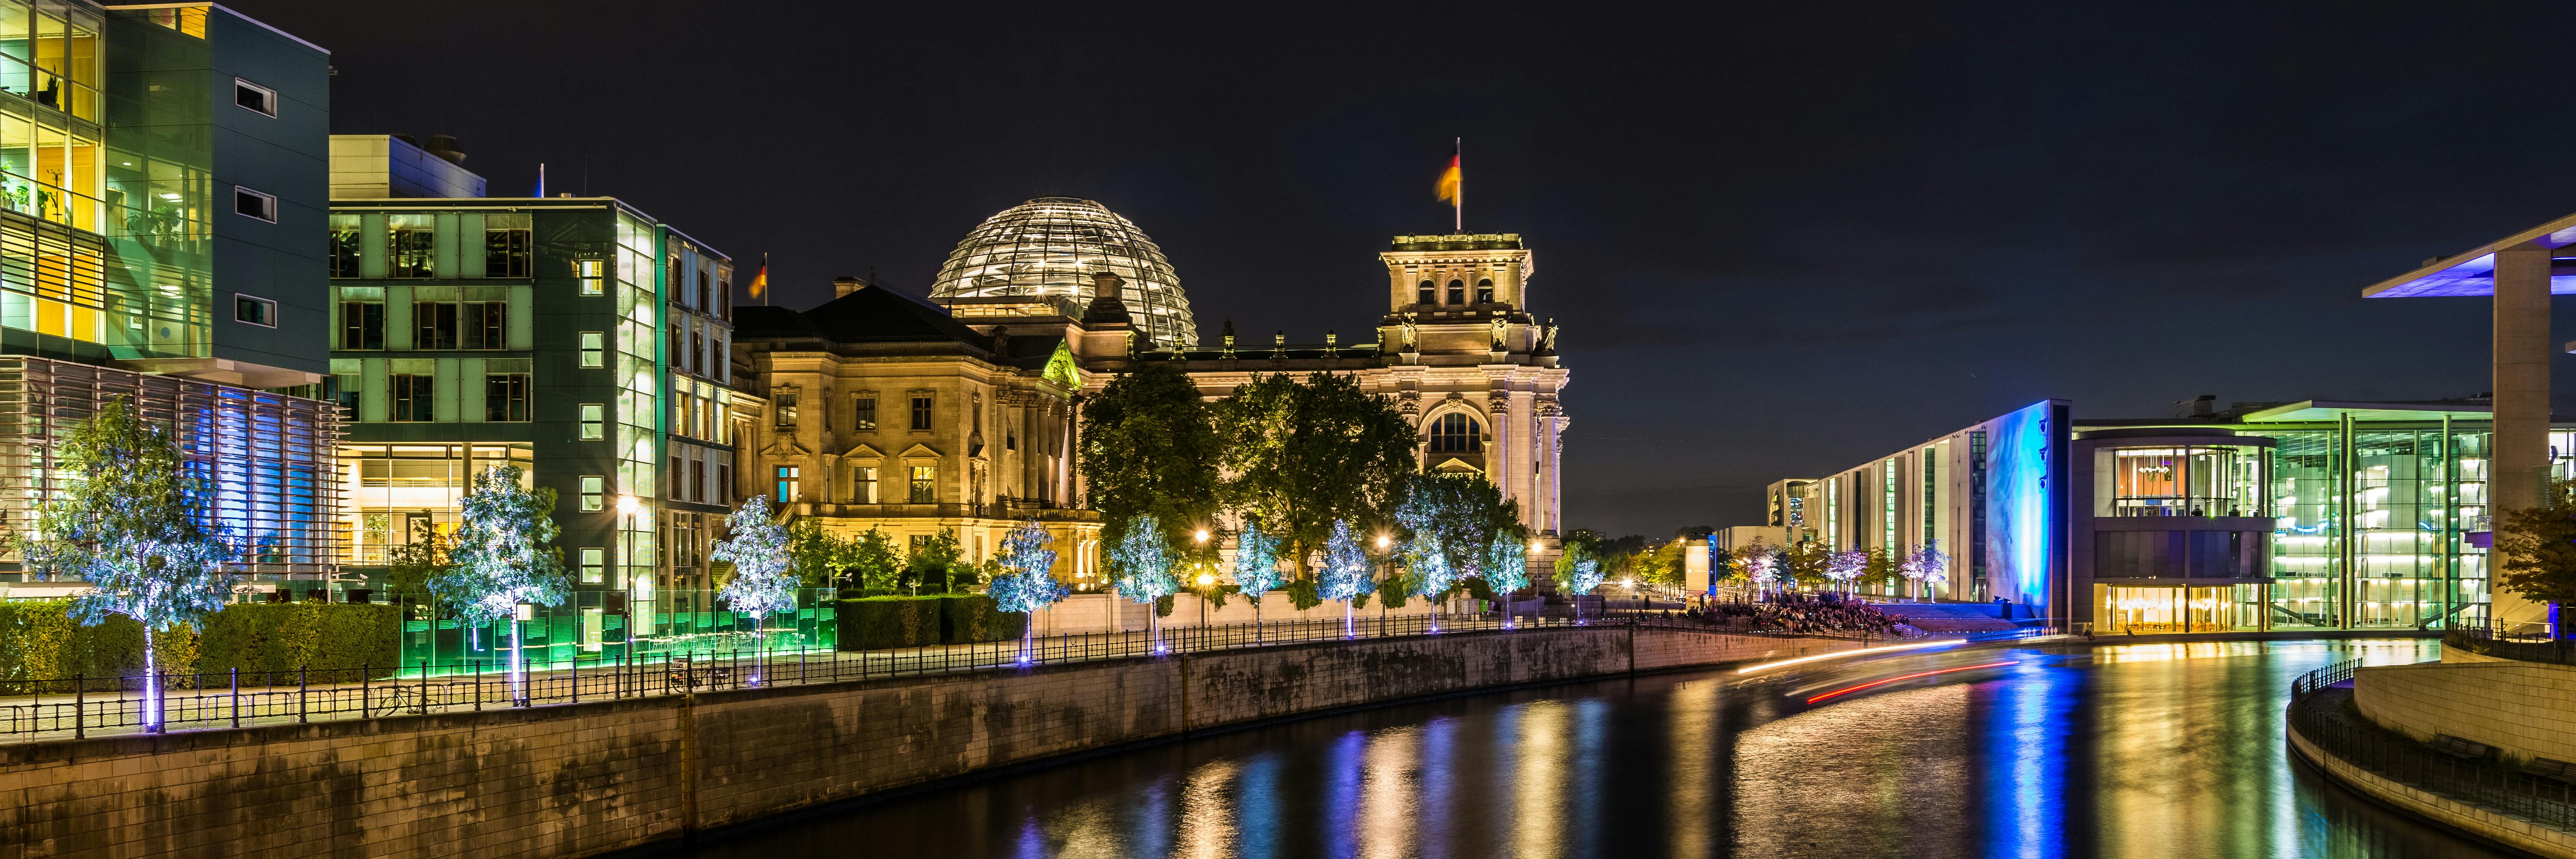 Croisière fluviale en soirée à Berlin